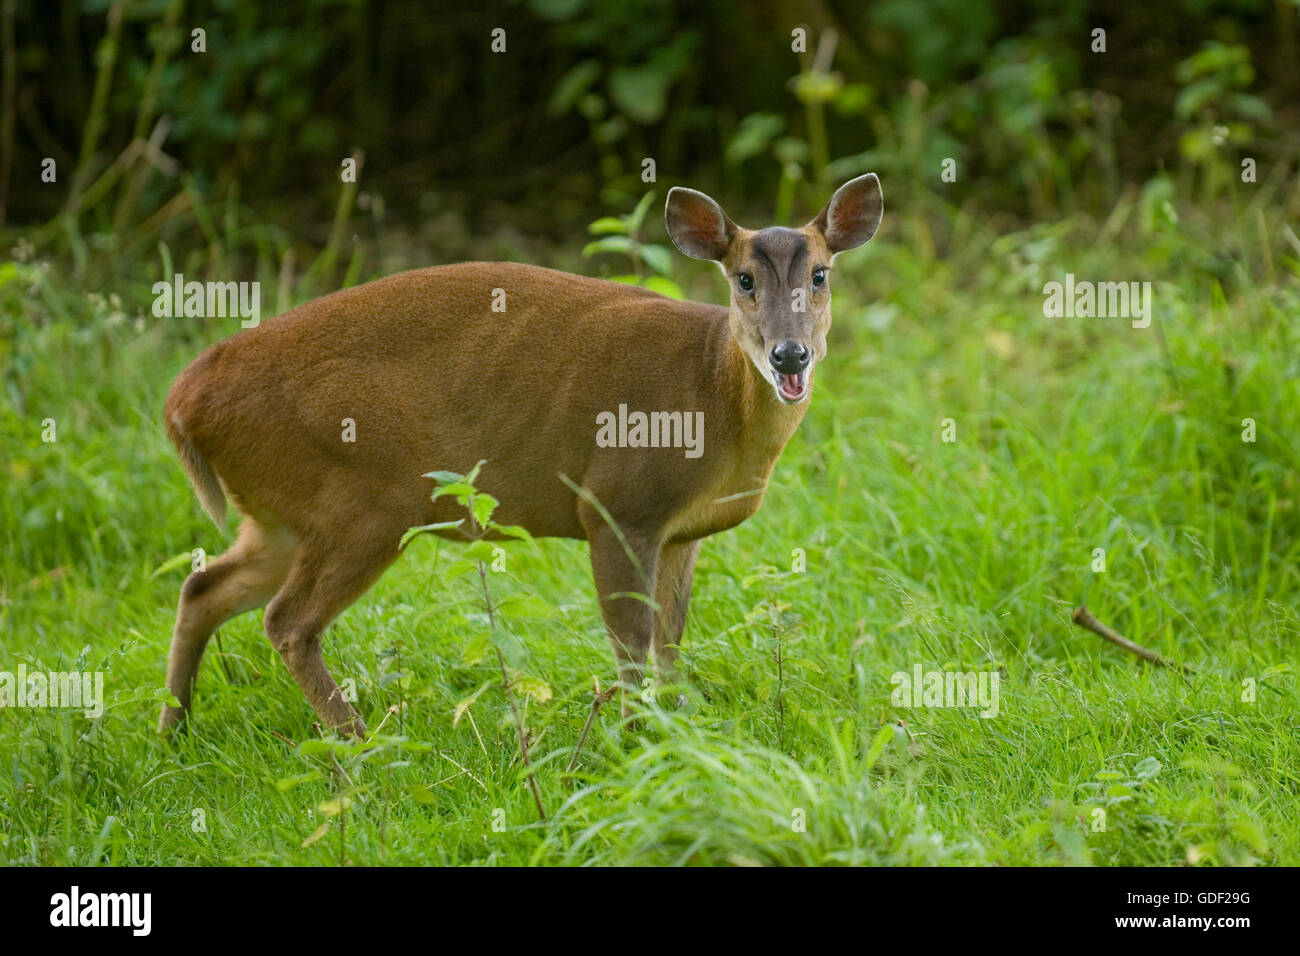 muntjac deer Stock Photo